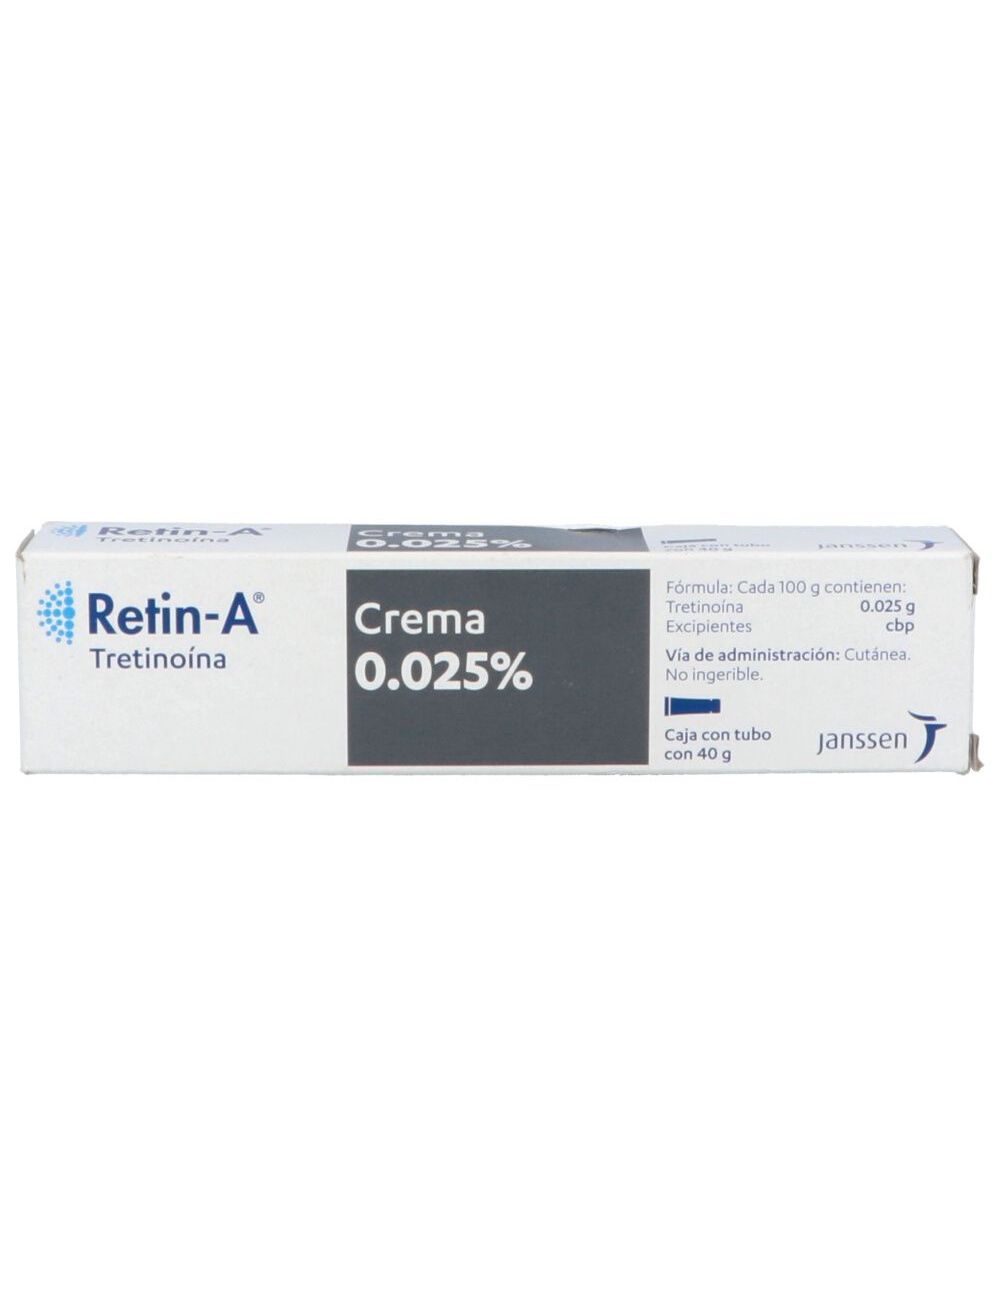 Retin-A Crema 0.025% Caja Con Tubo Con 40g